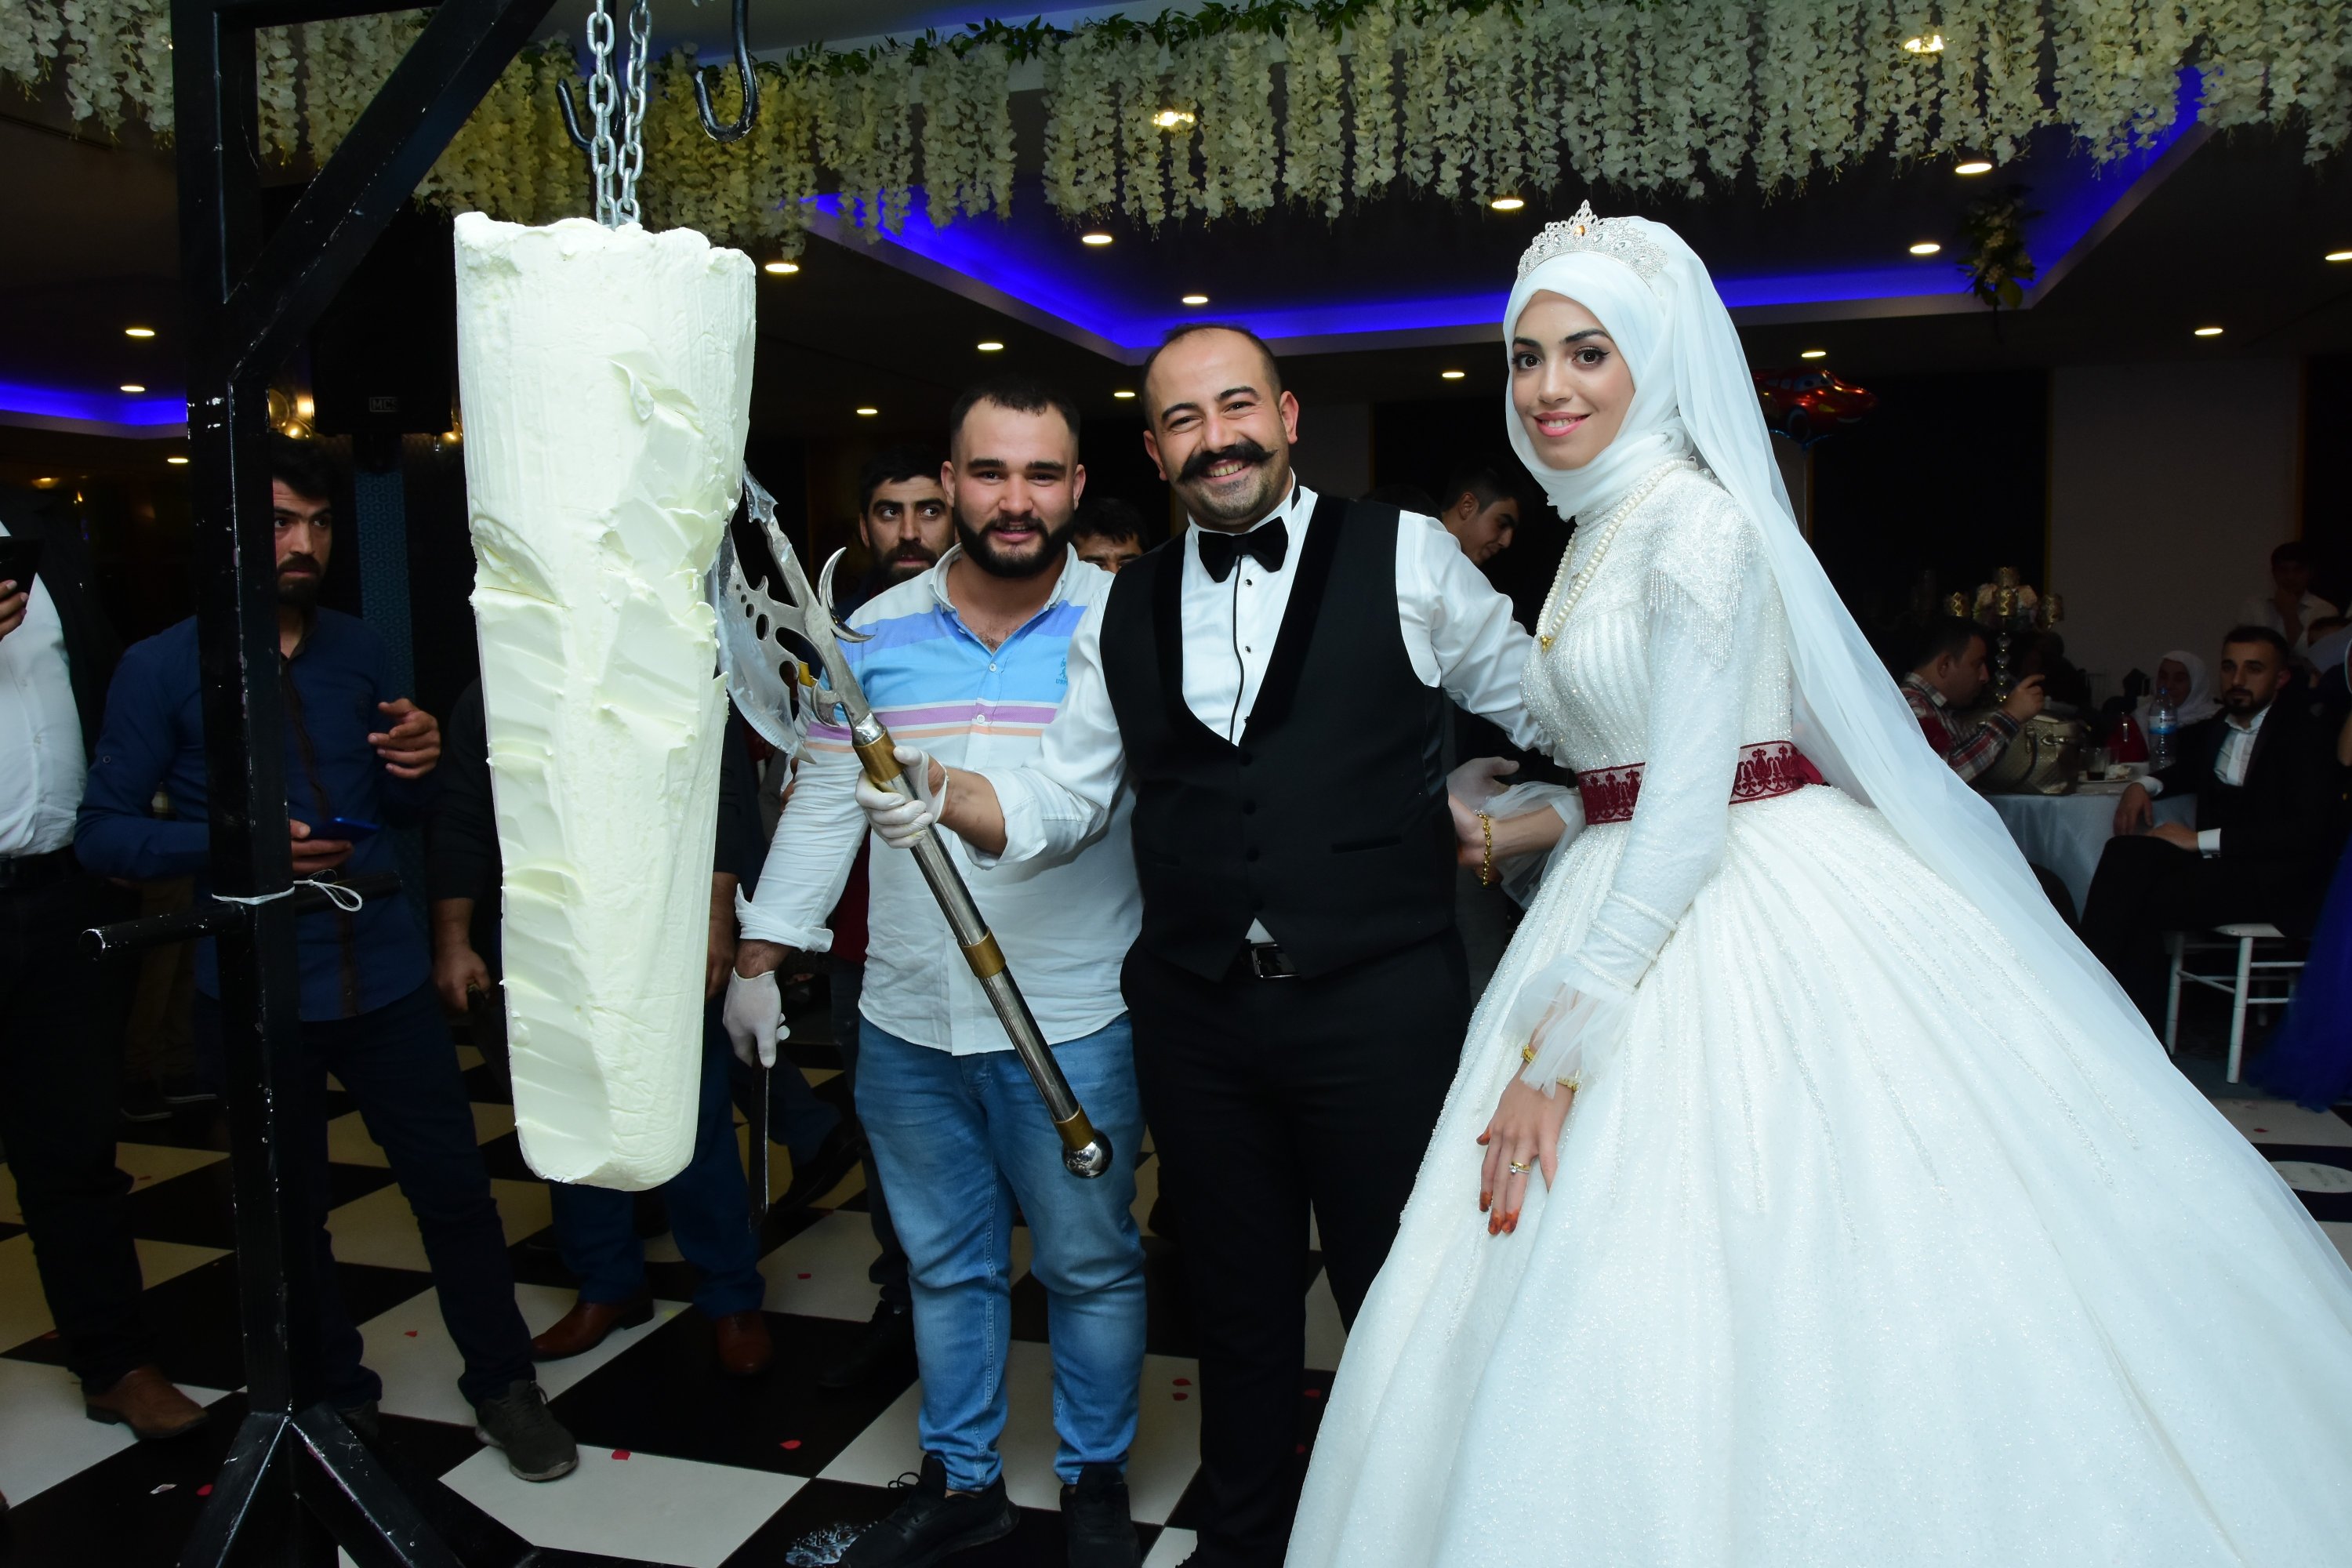 The happy couple posing at their wedding, Kahramanmaraş, Turkey, Nov. 22, 2021. (IHA Photo) 